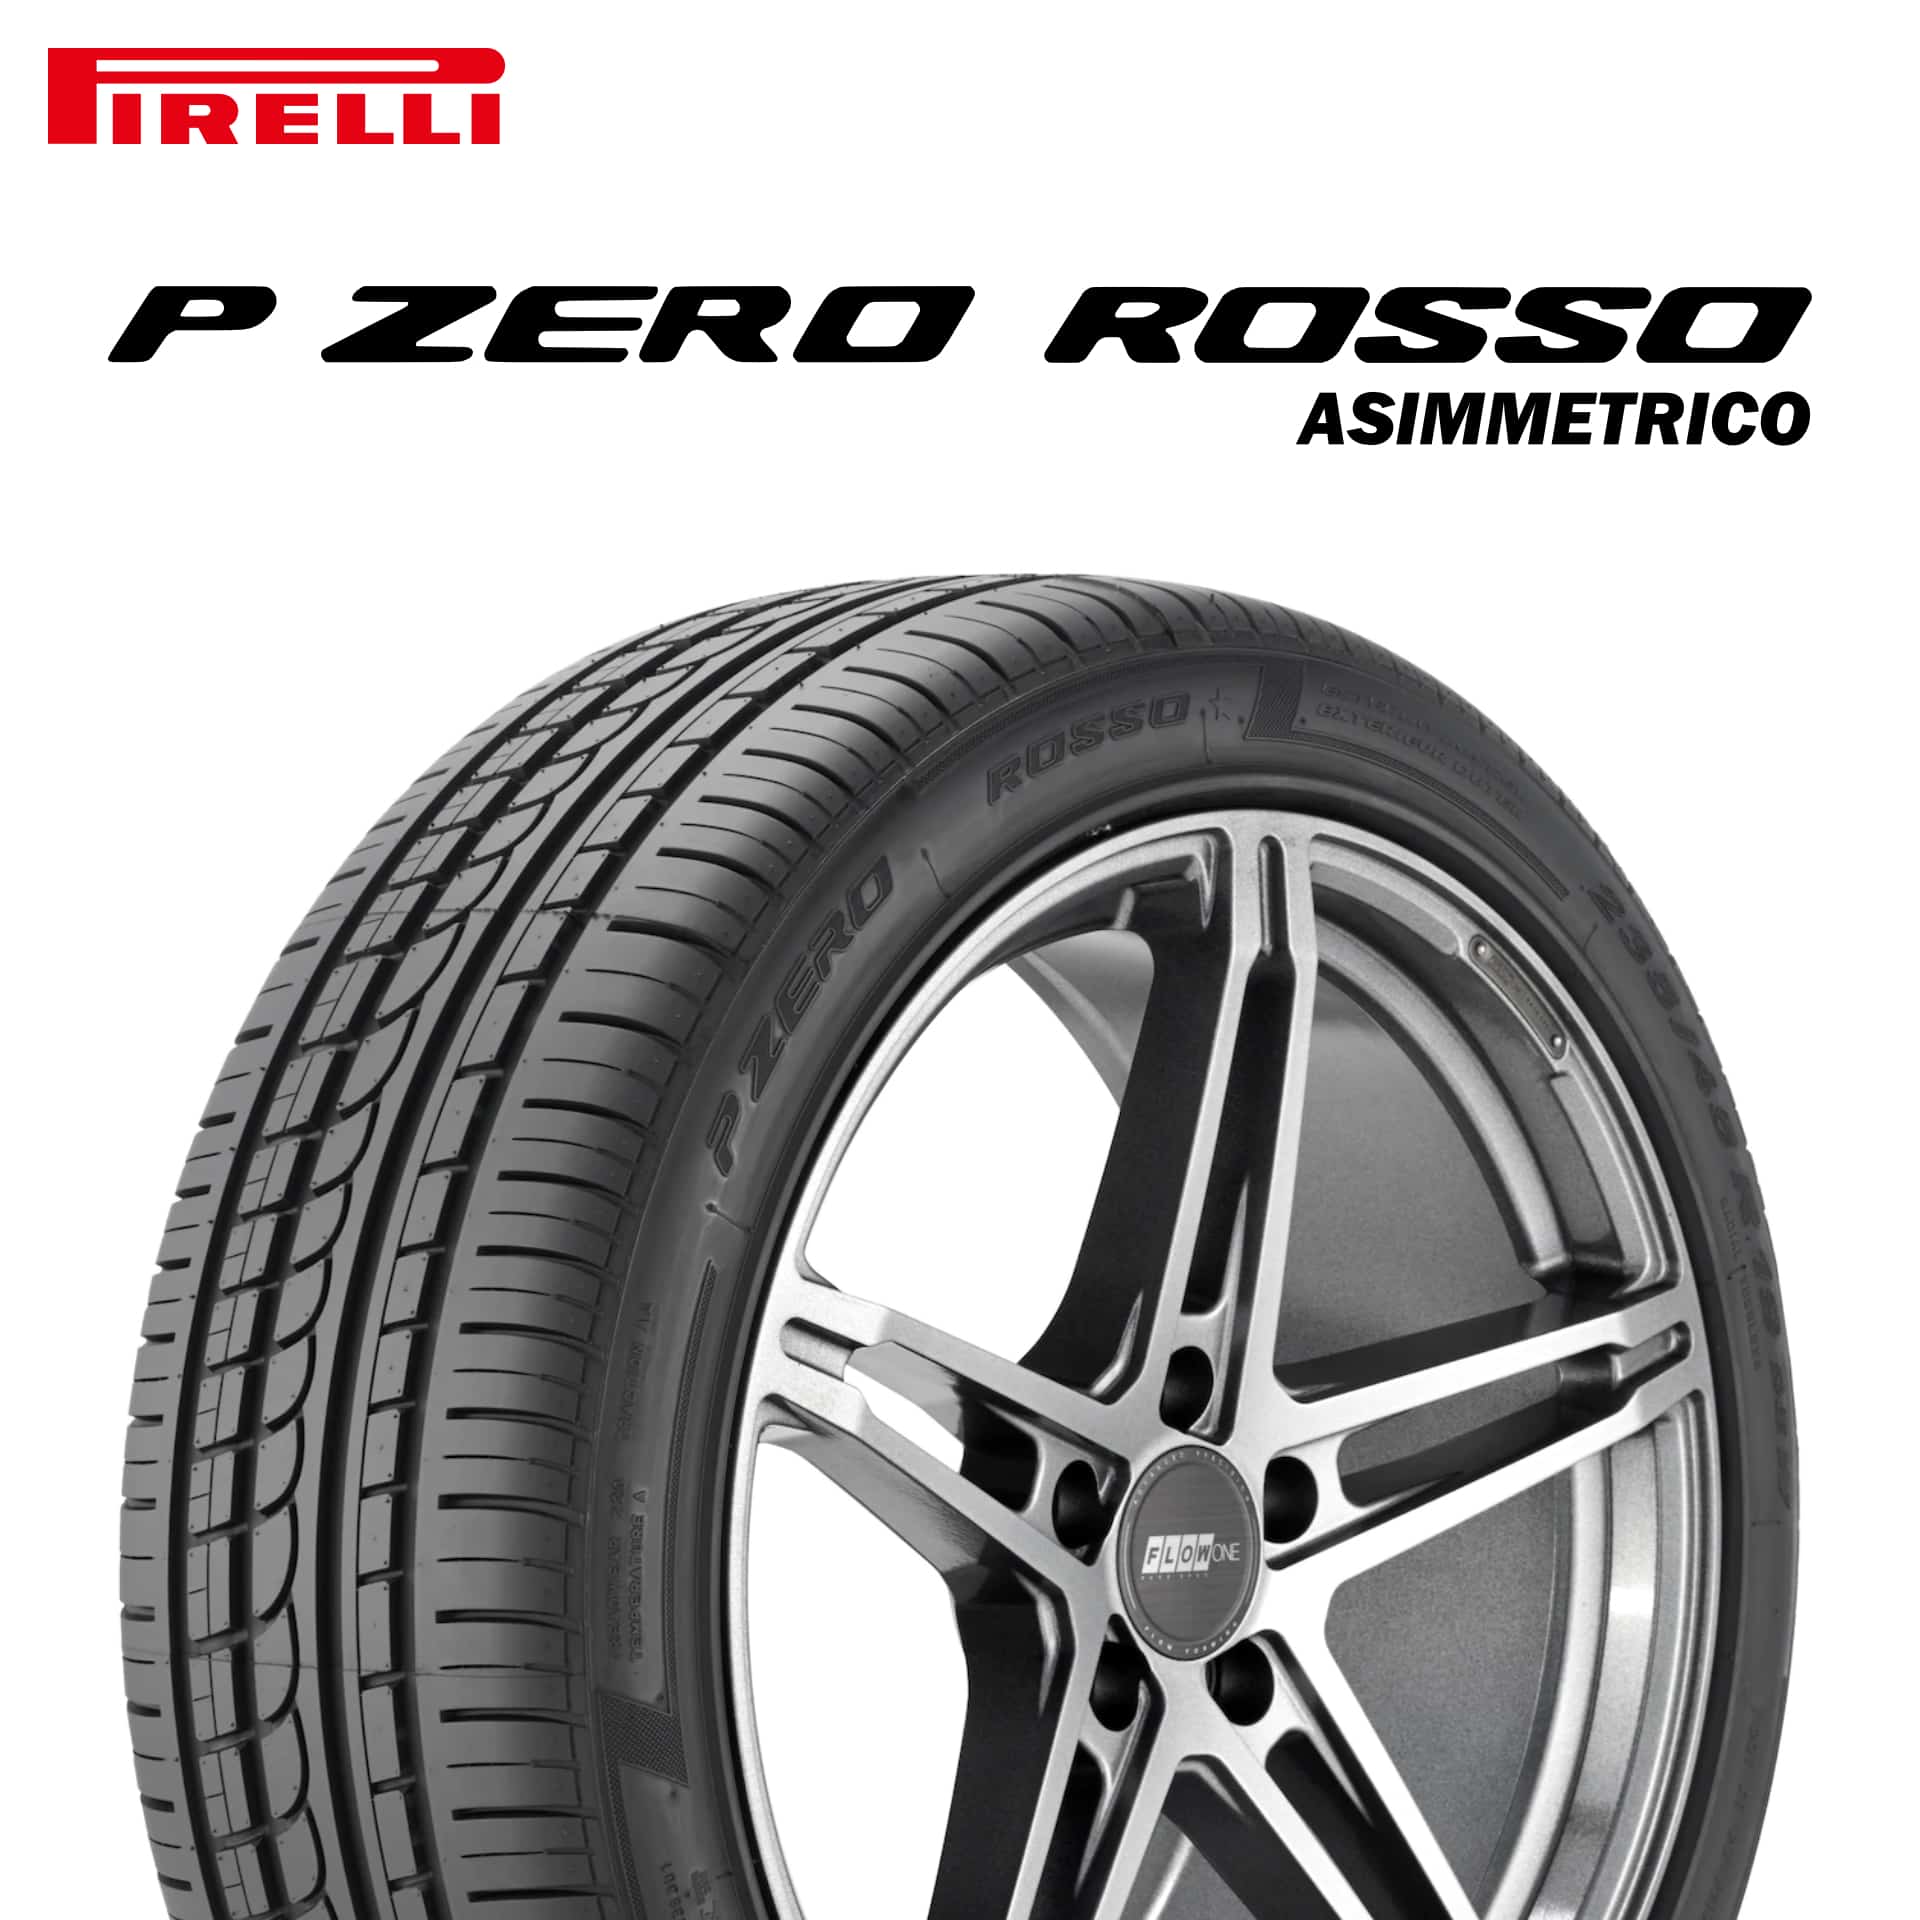 22年製 285/35R19 (99Y) F ピレリ P ZERO ROSSO ASIMMETRICO (ピーゼロ ロッソ アシンメトリコ) フェラーリ承認タイヤ 19インチ 新品